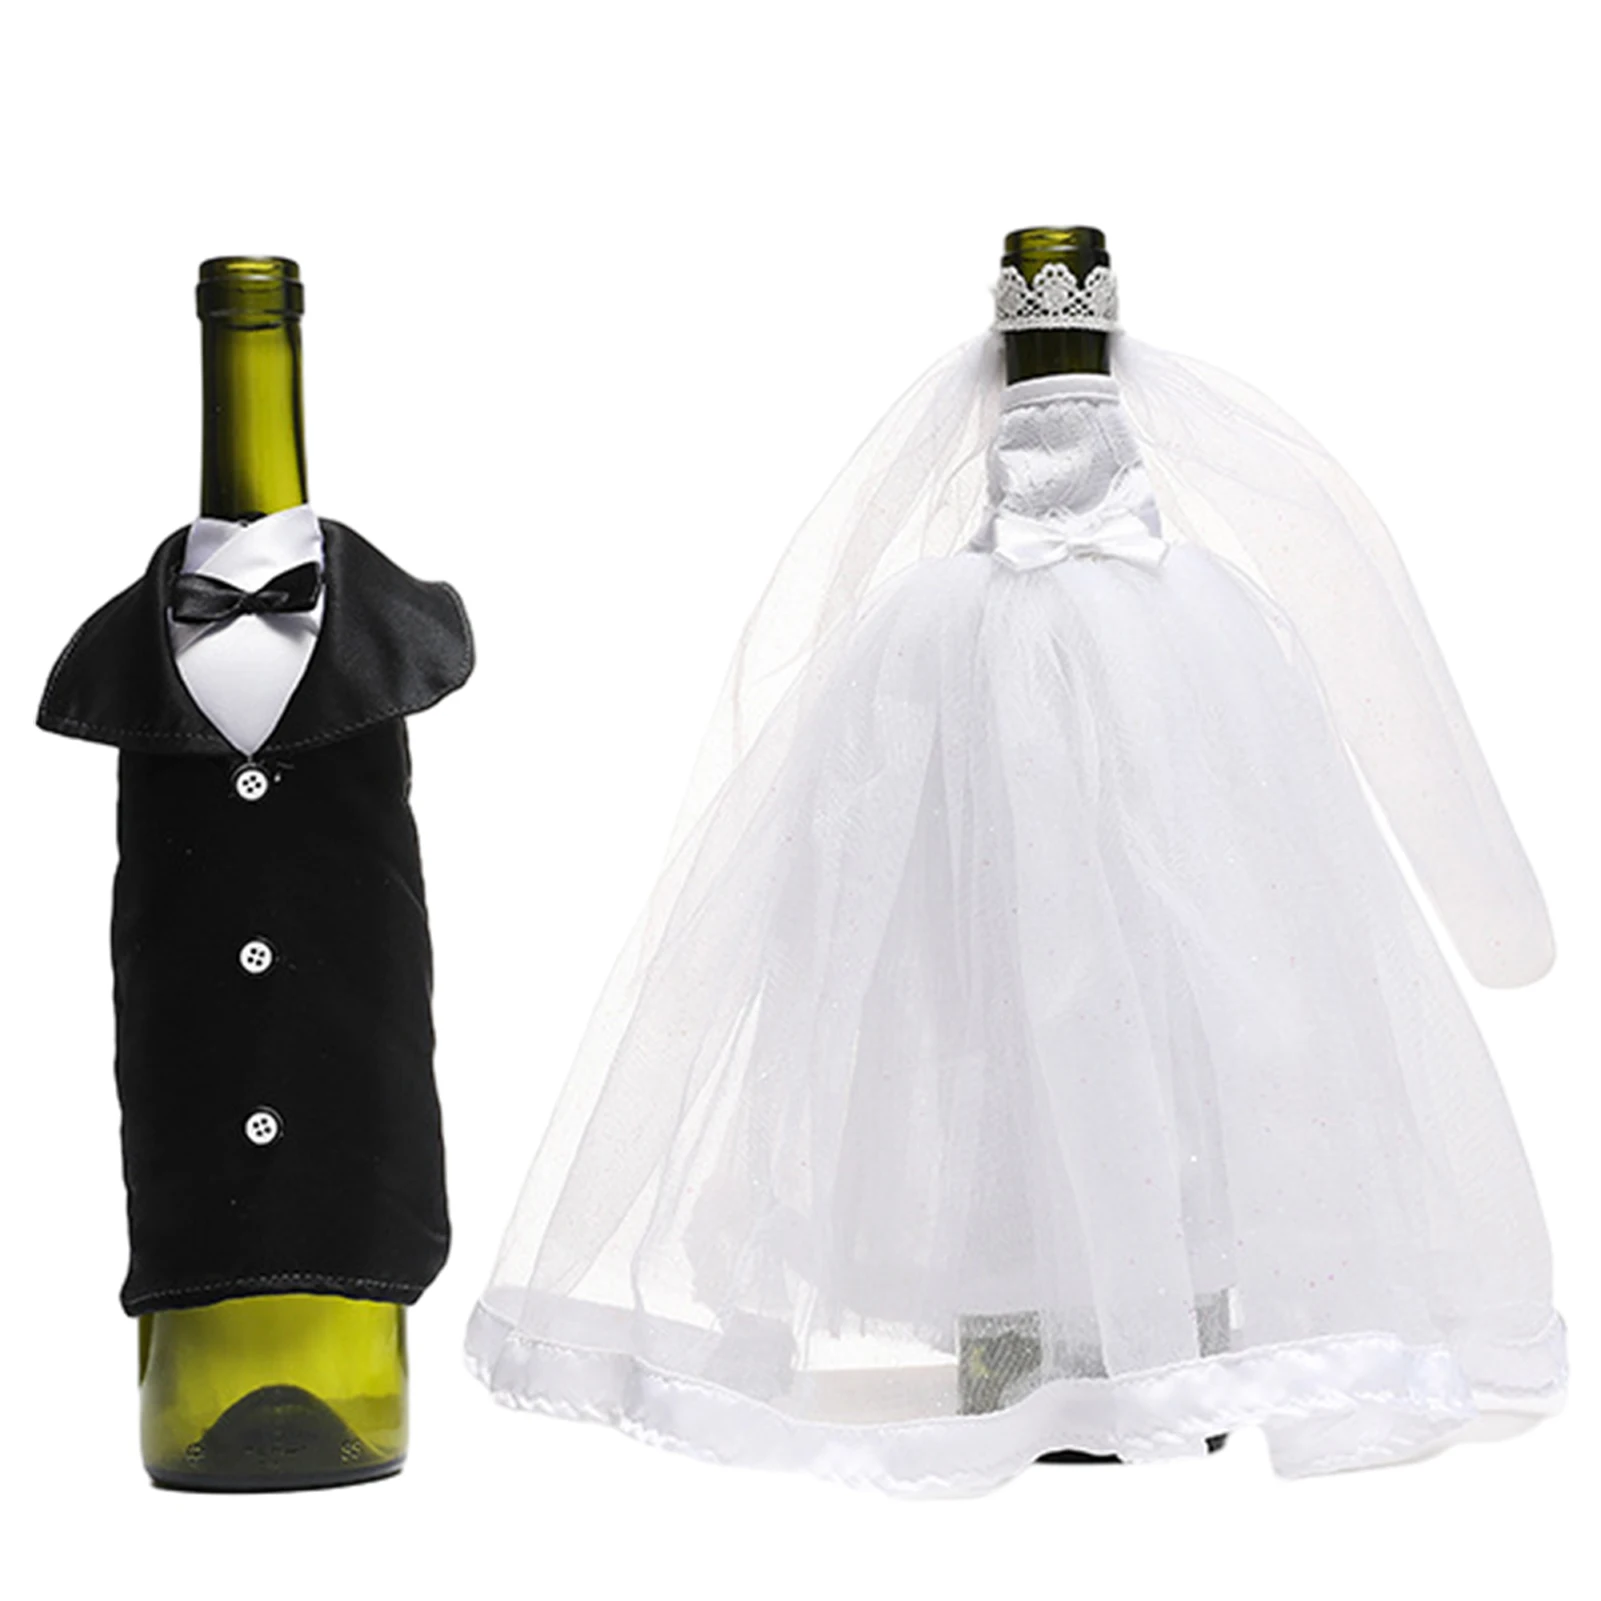 

Свадебные забавные подарки, 4 шт., чехлы для винных бутылок, черный смокинг для жениха и невесты, центральные части стола цвета шампанского, для помолвки и невесты